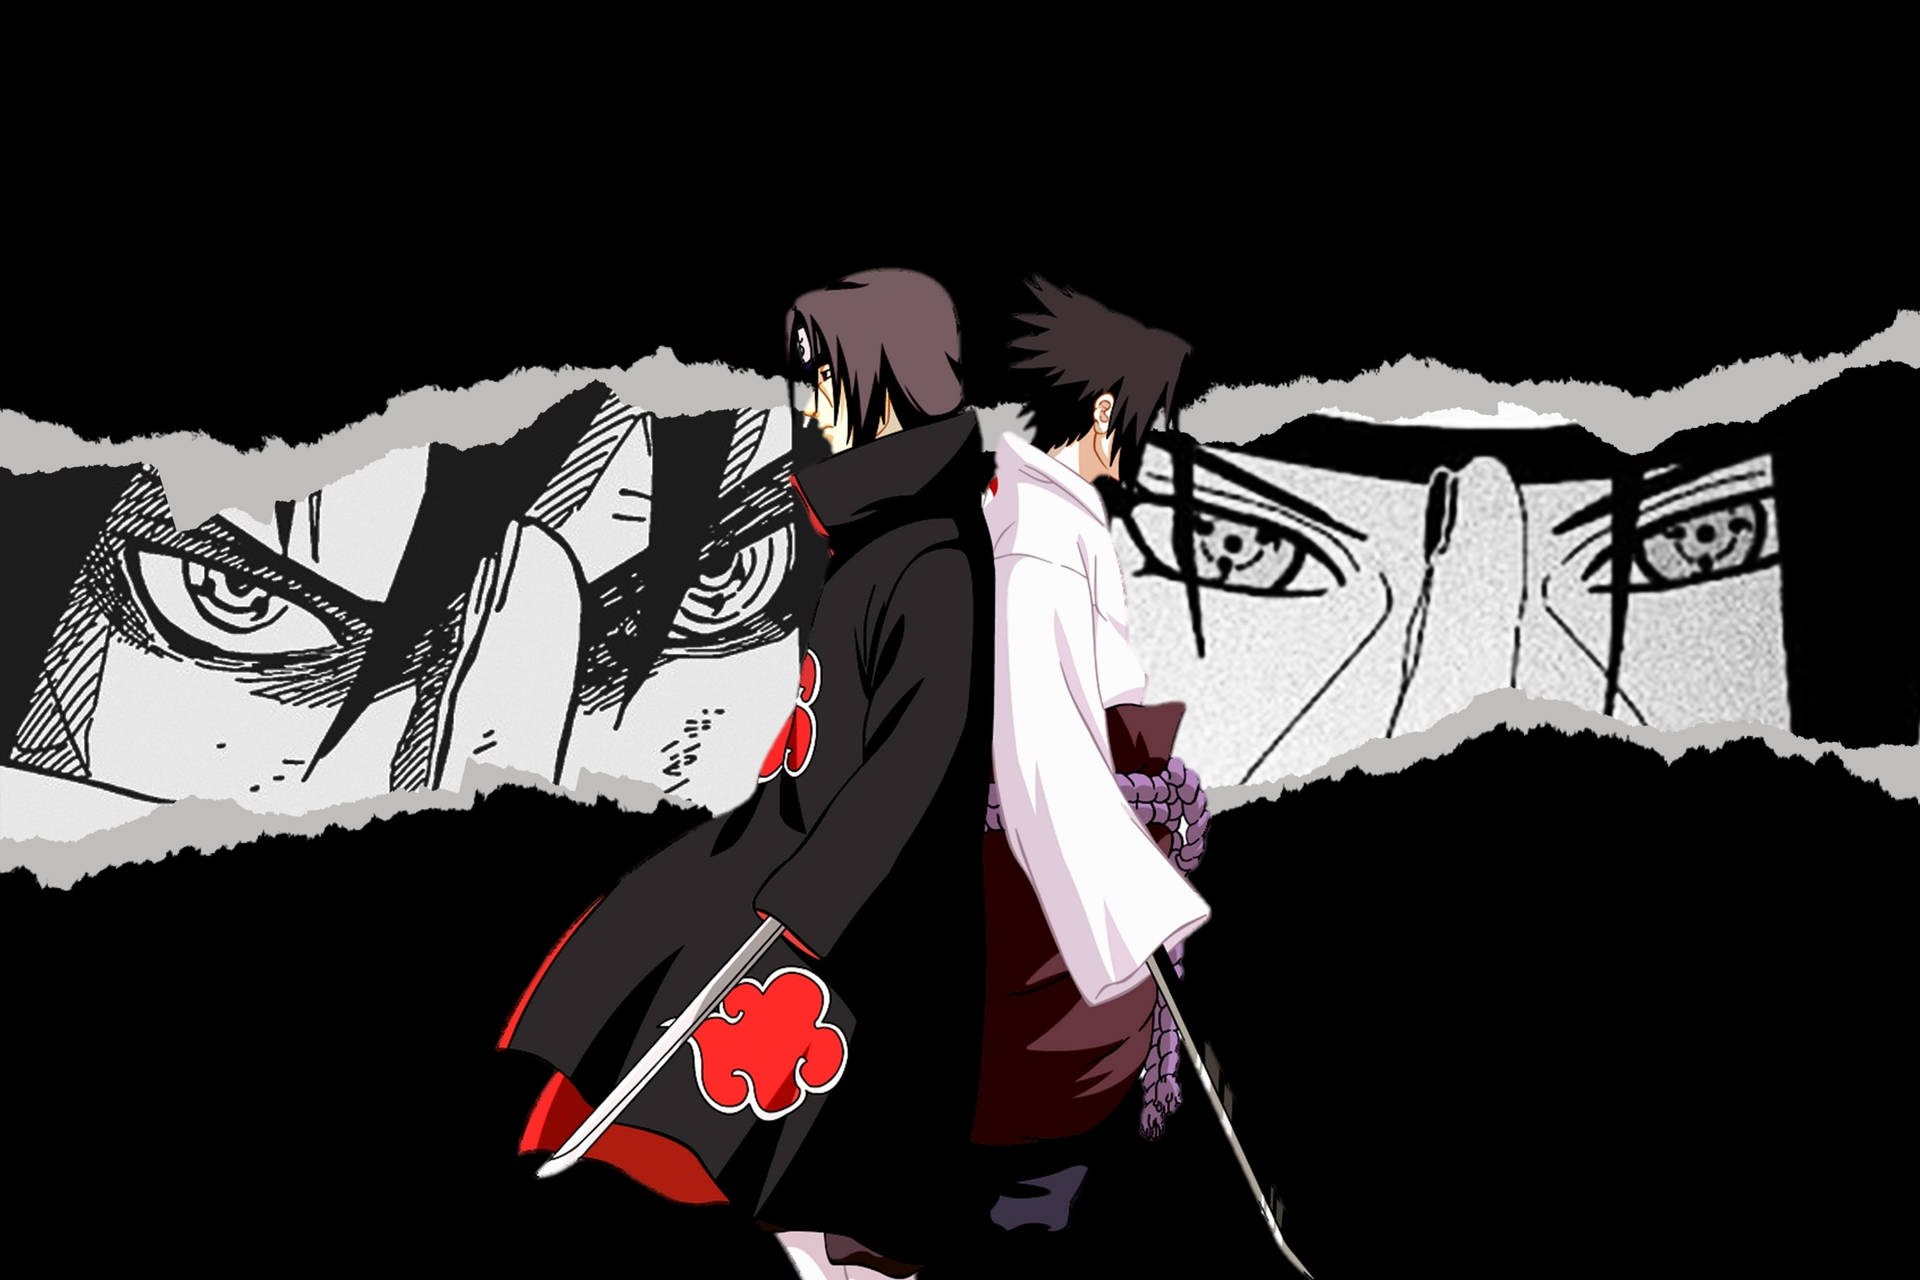 Akatsuki Itachi Sasuke Back-to-back